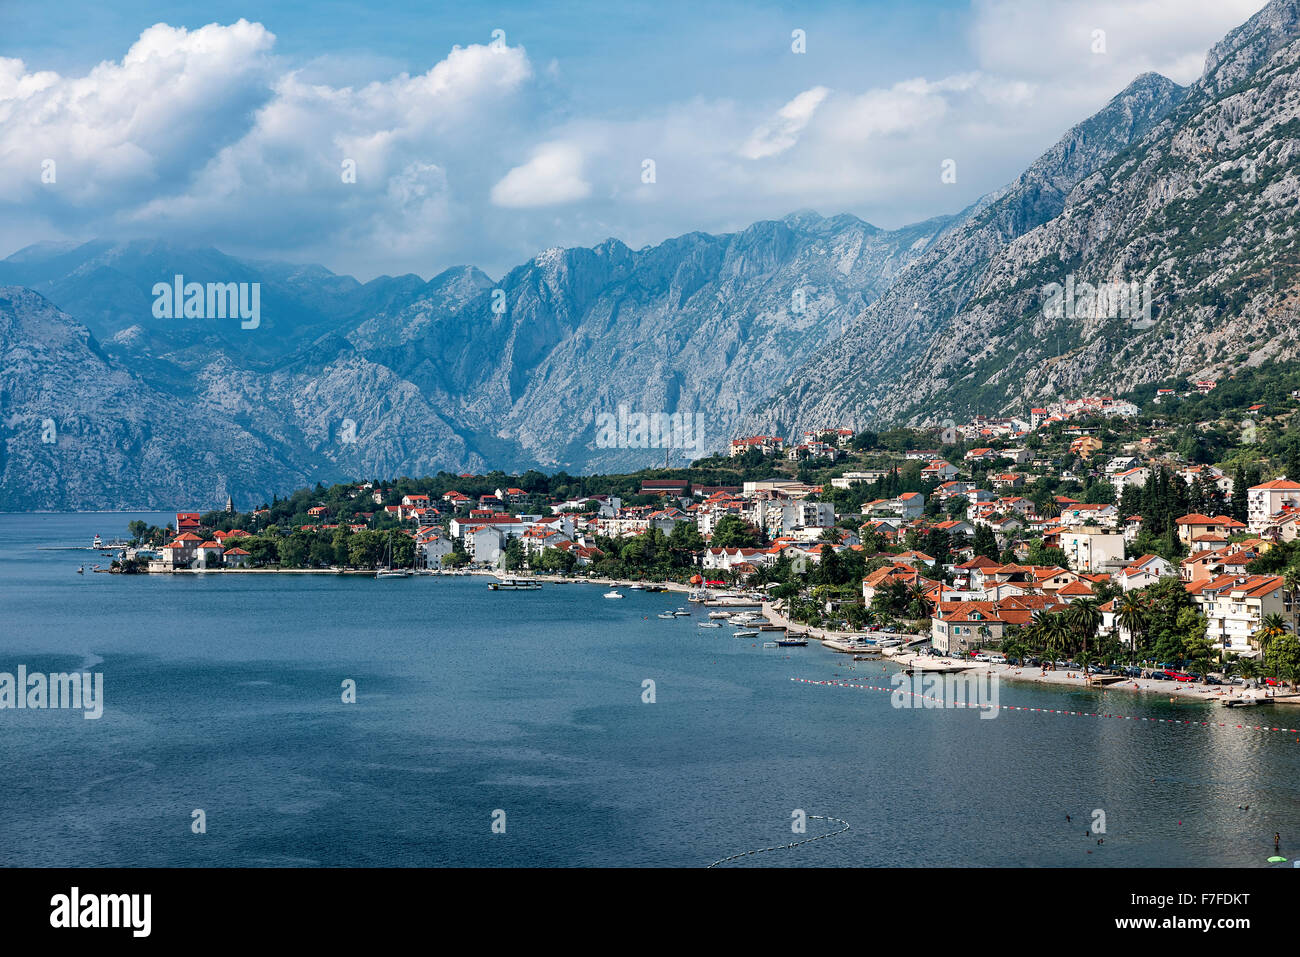 Coastal town of Kotor, Bay of Kotor, Montenegro Stock Photo